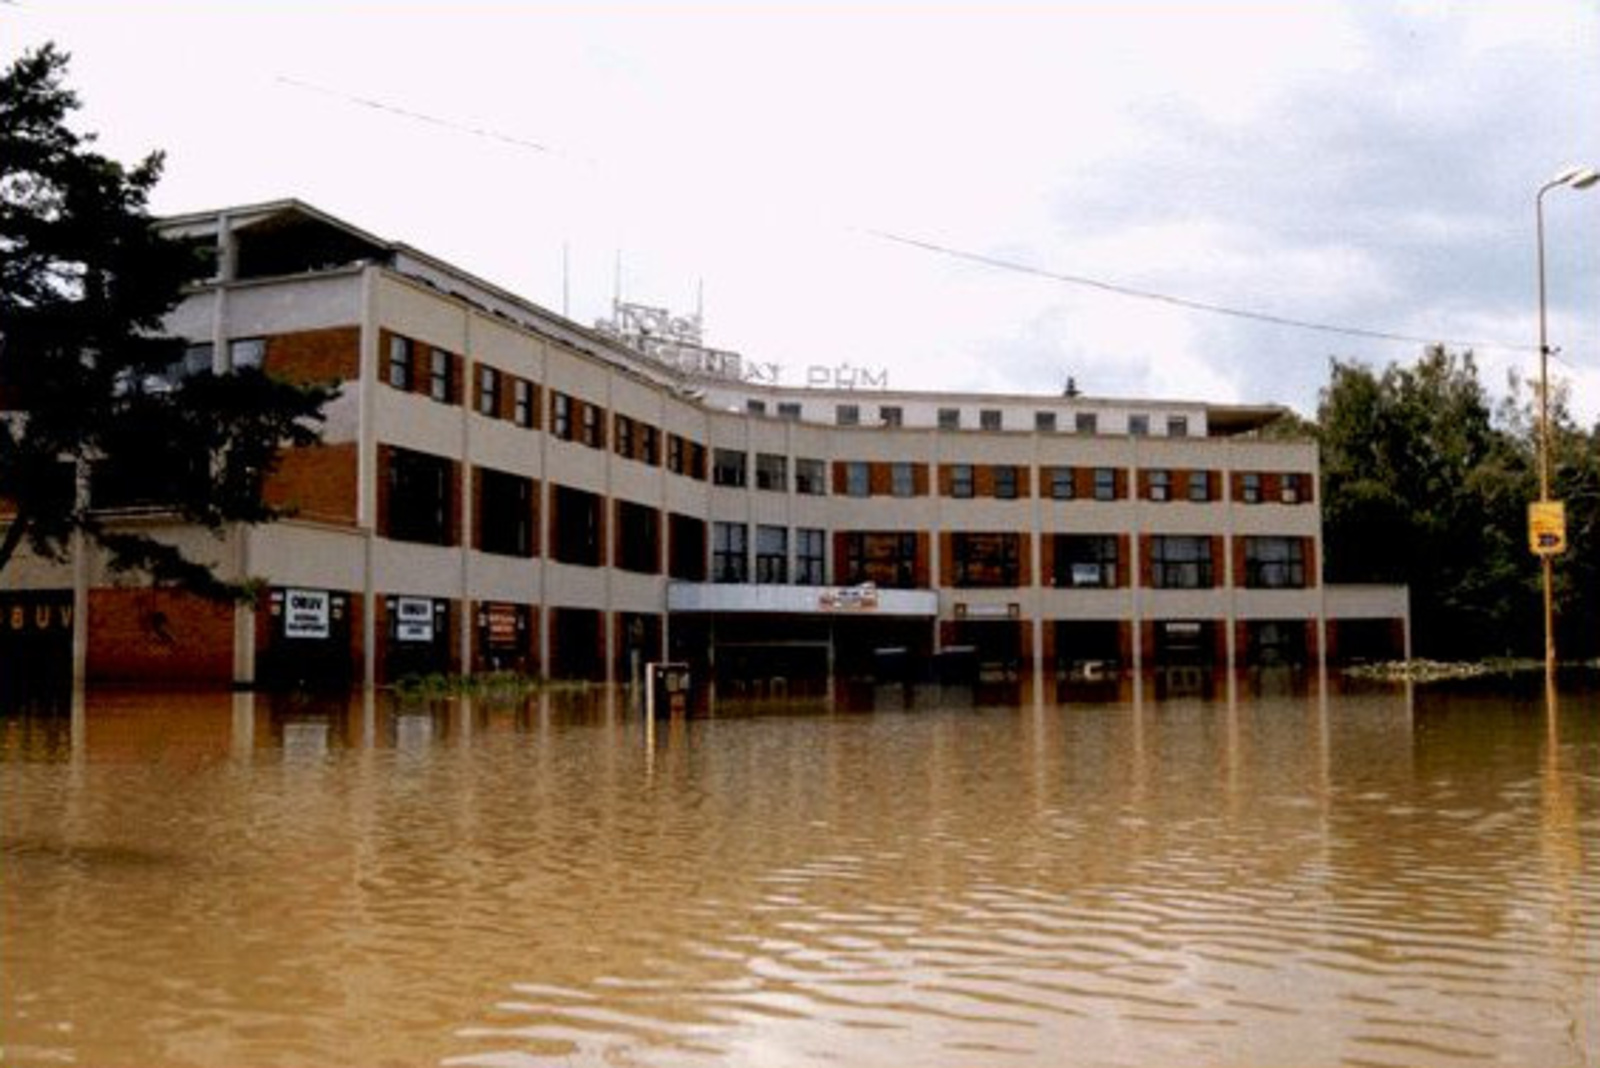 Povodeň 1997 na Zlínsku: podívejte se, jak tehdy ničila tragická potopa -  Zlínský deník